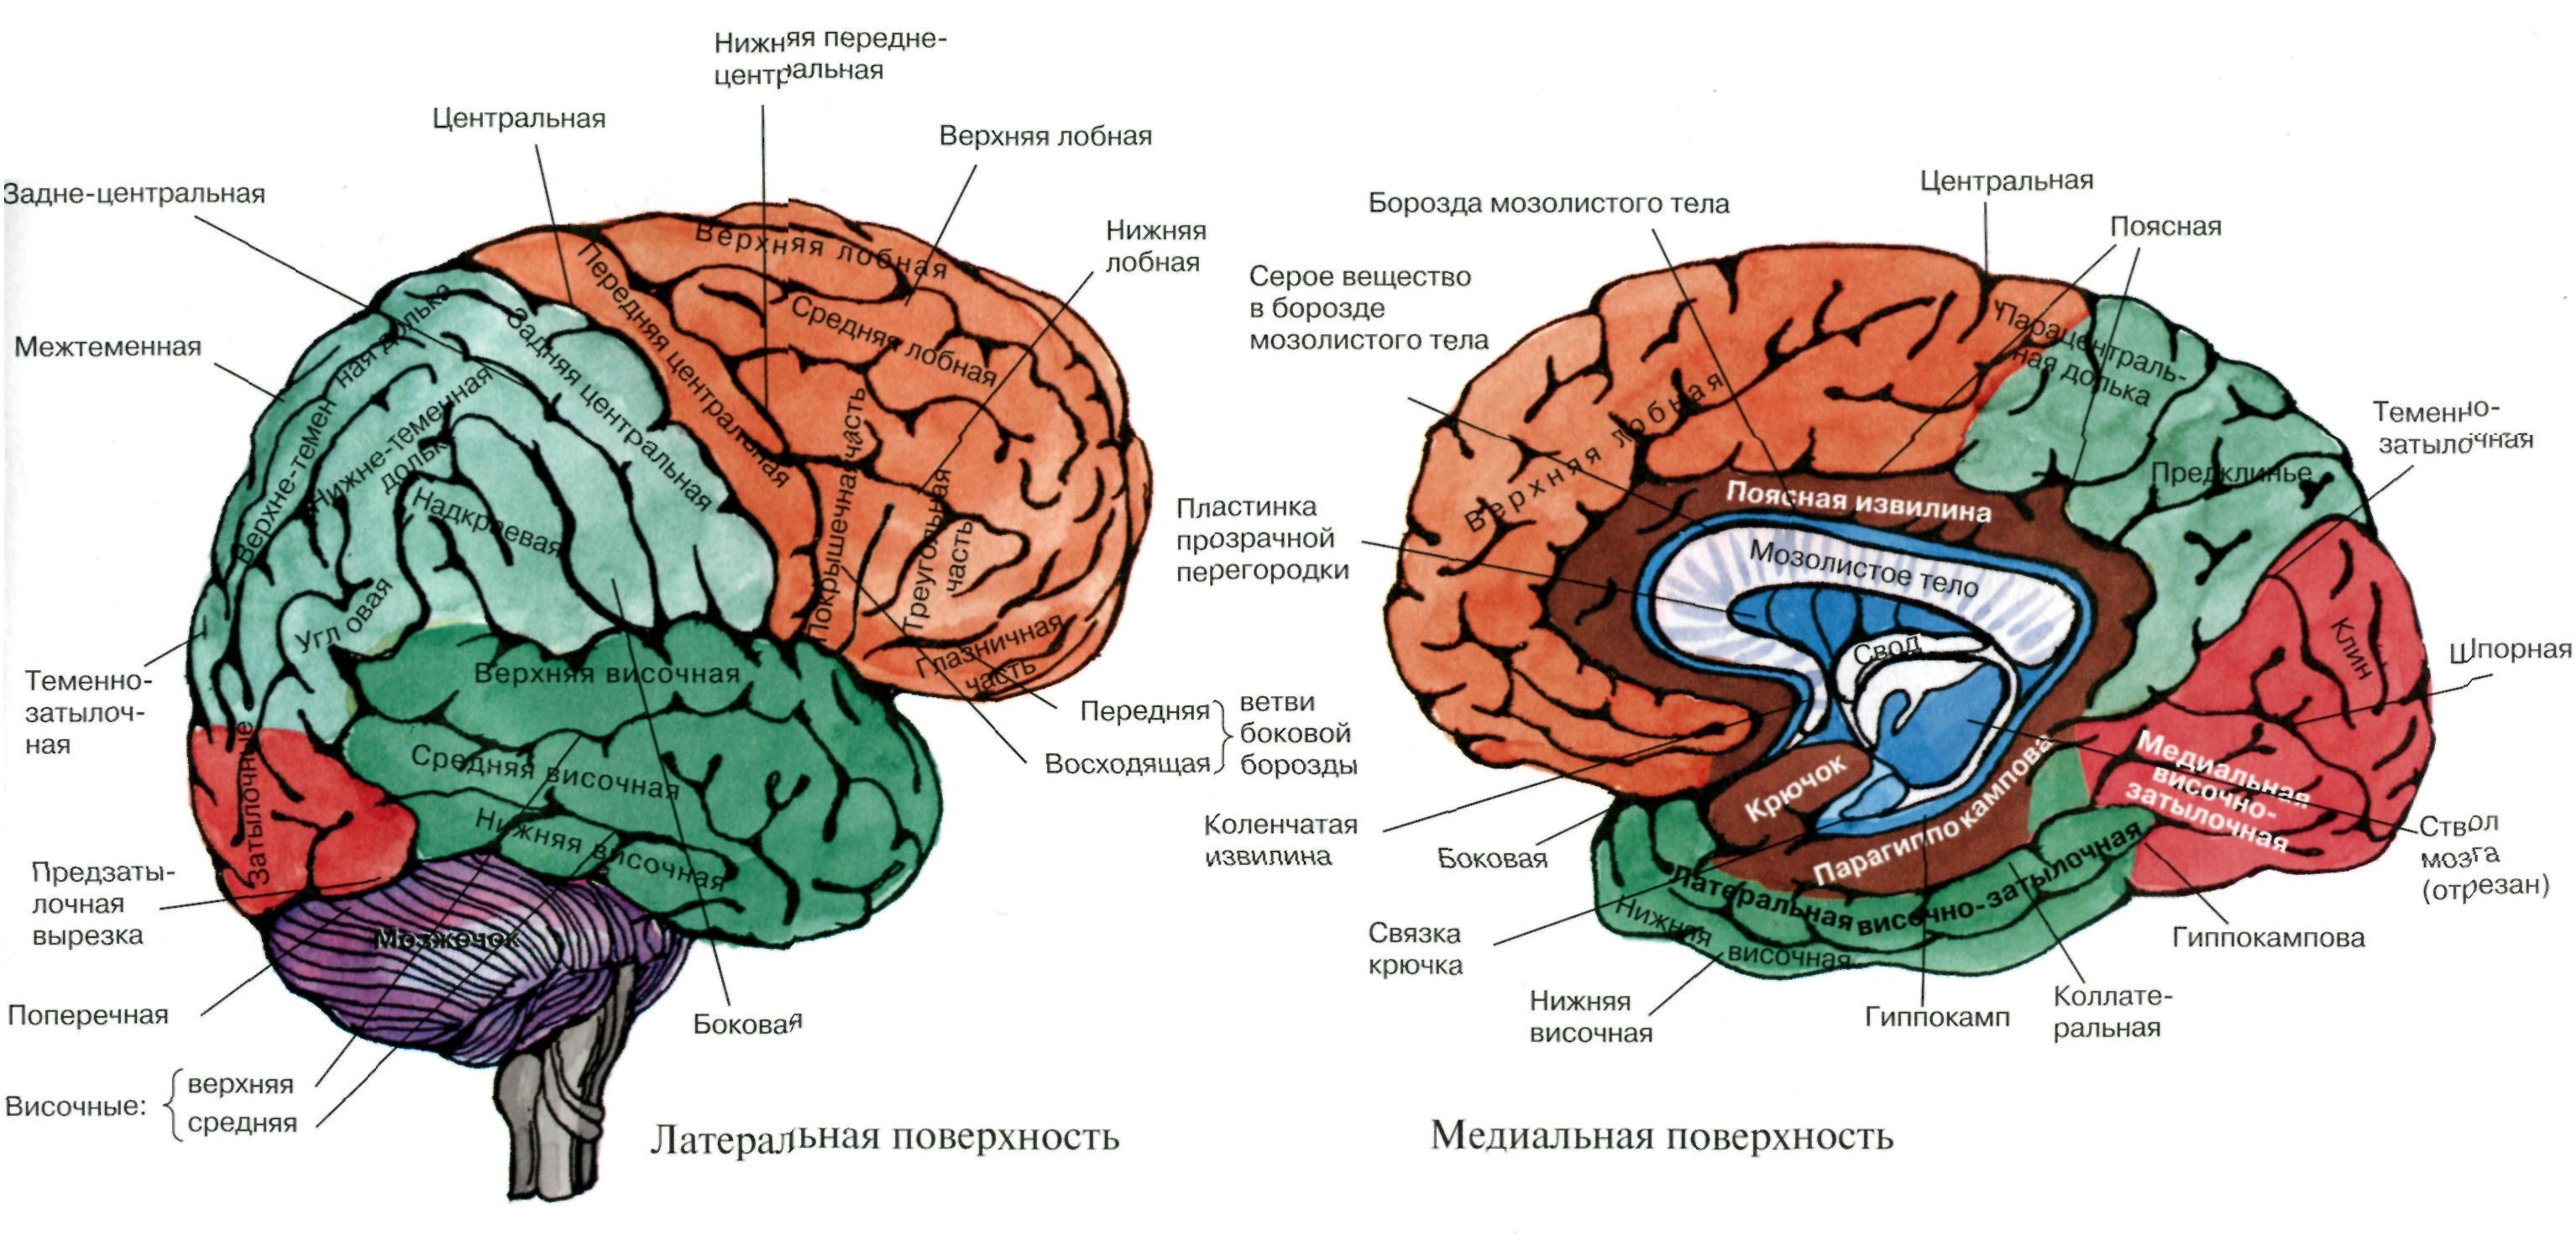 Кора головного мозга медиальная поверхность